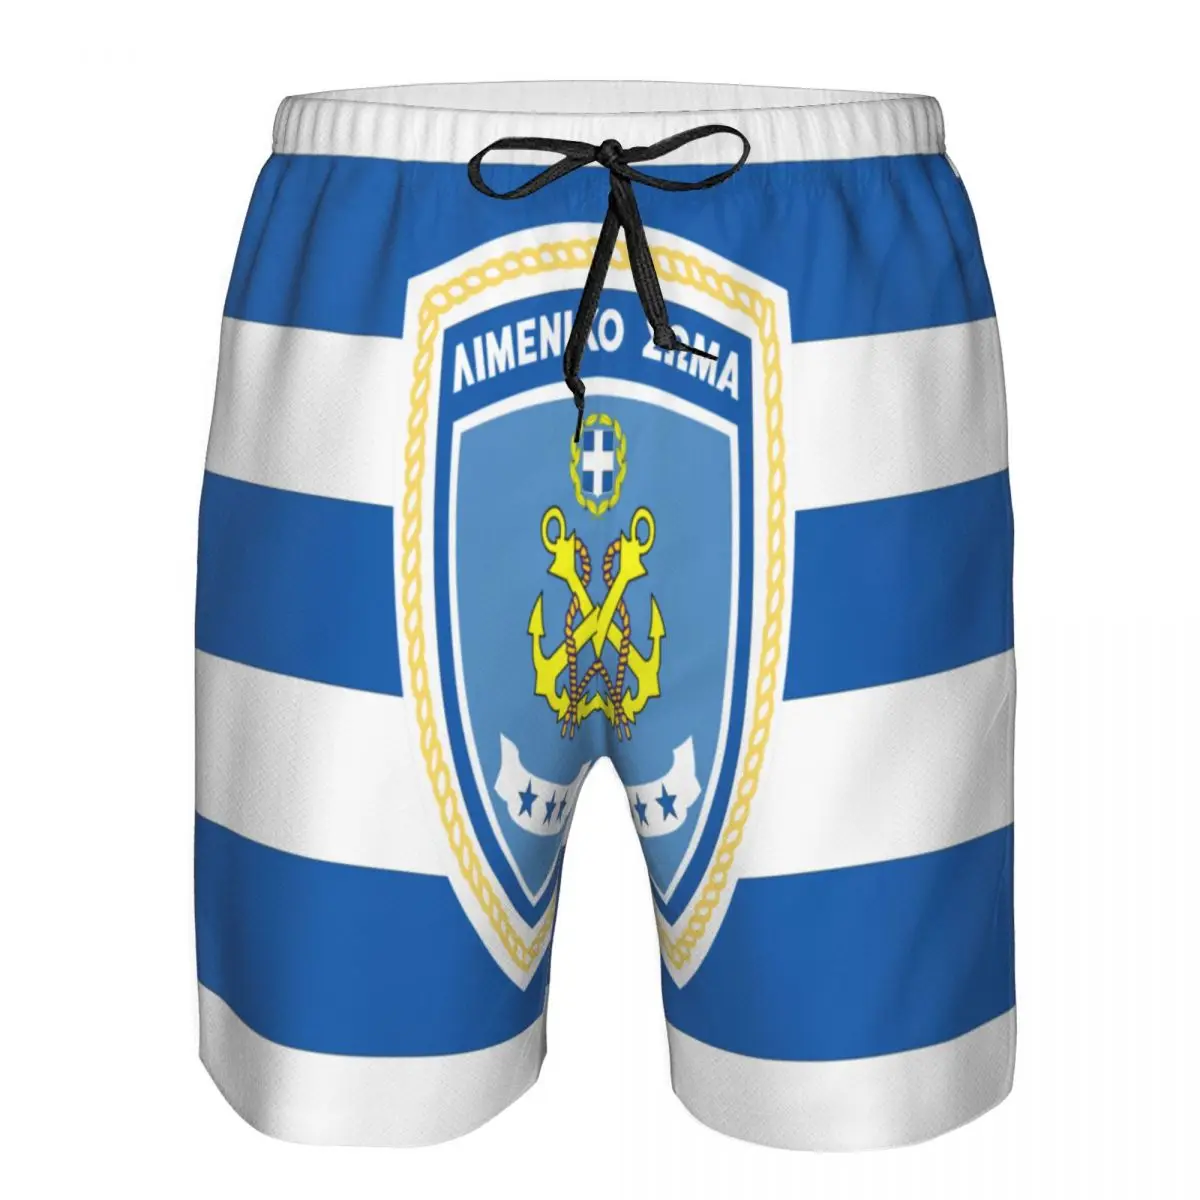 

Быстросохнущие плавательные шорты для мужчин с флагом береговой охраны Hellenic, мужской купальник, плавательные плавки, летняя пляжная одежда для купания